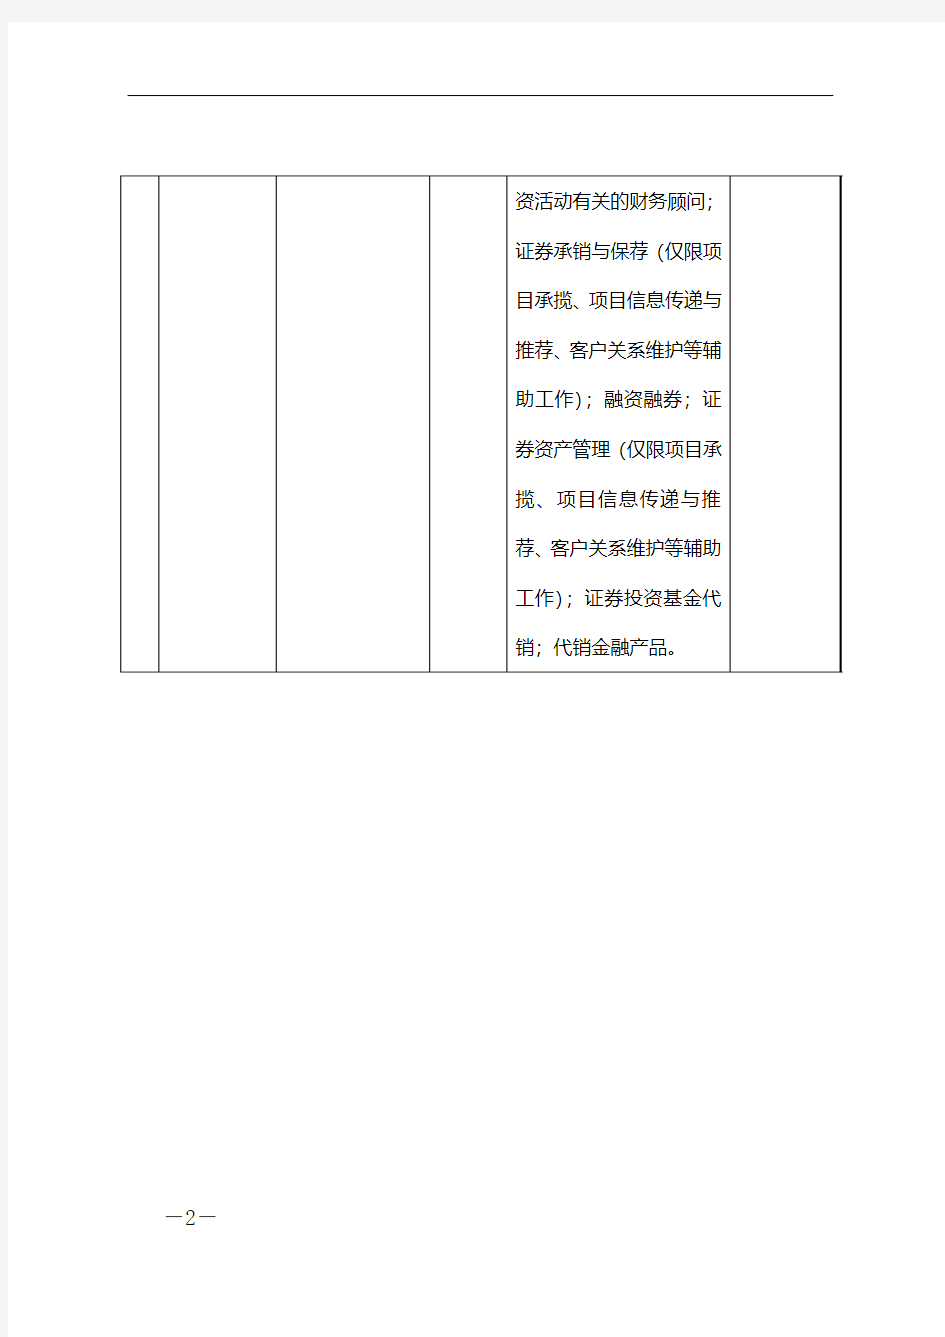 拟设立分支机构基本情况表 - 中国证监会